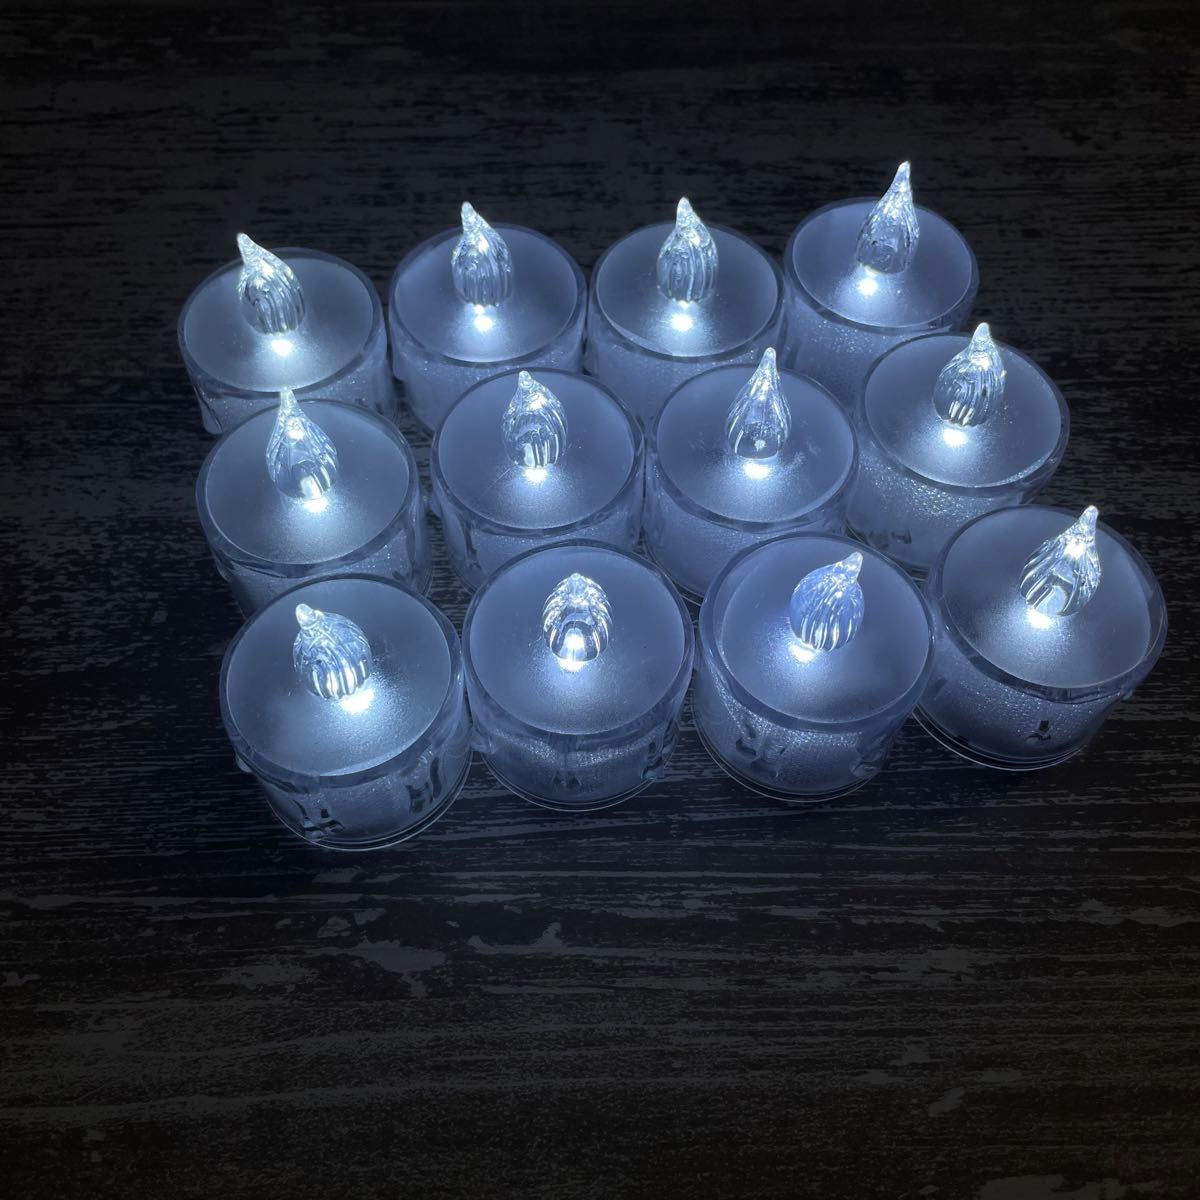 LED キャンドル ライト クリスマス 照明 ろうそく イルミ イベント キャンプ 装飾 24個セット レトロ